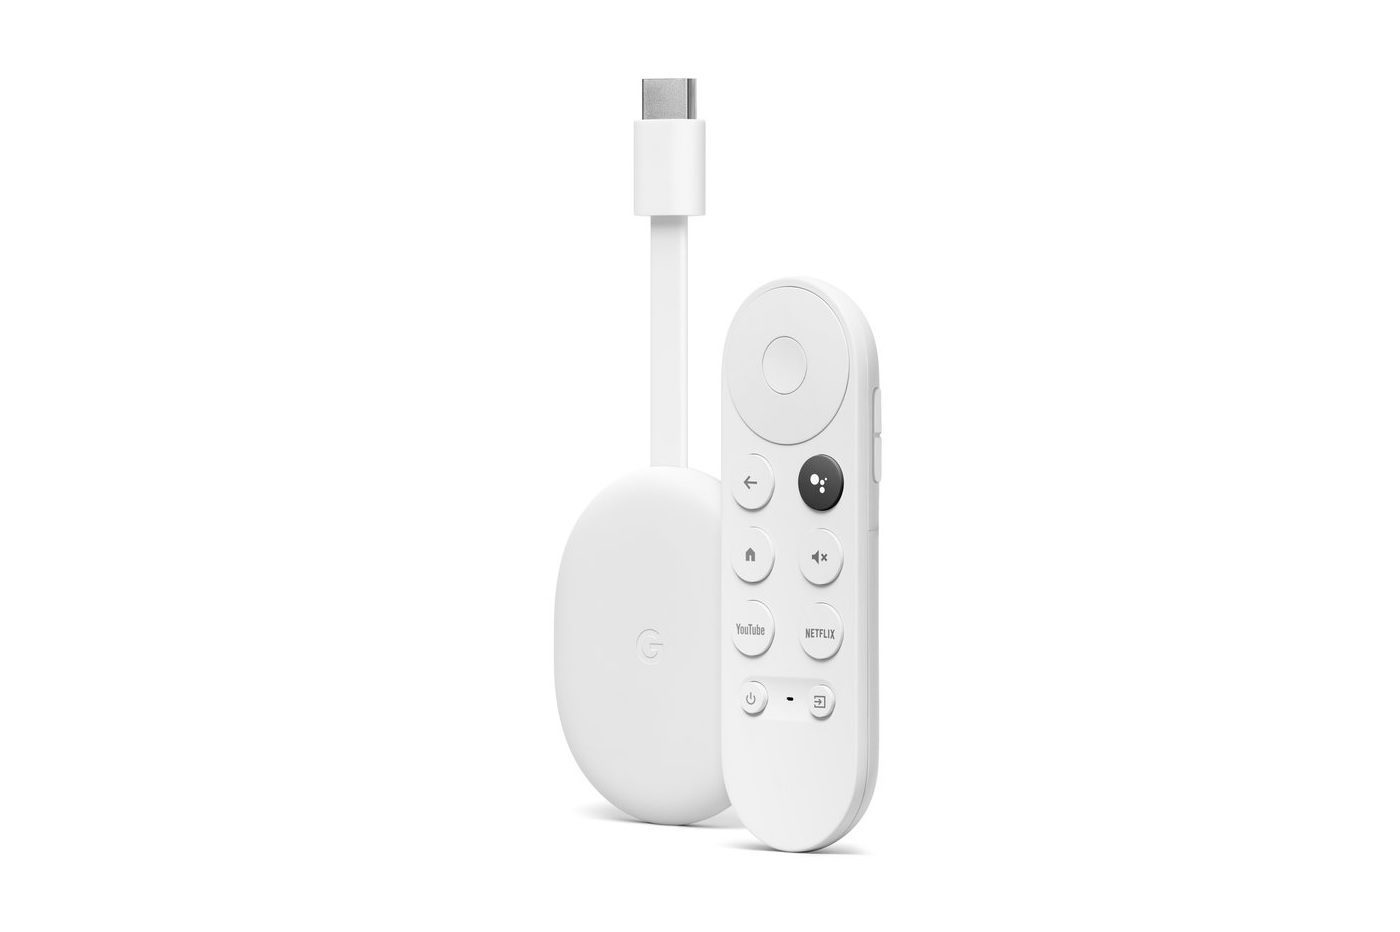 casse encore le prix du Chromecast avec Google TV qui passe